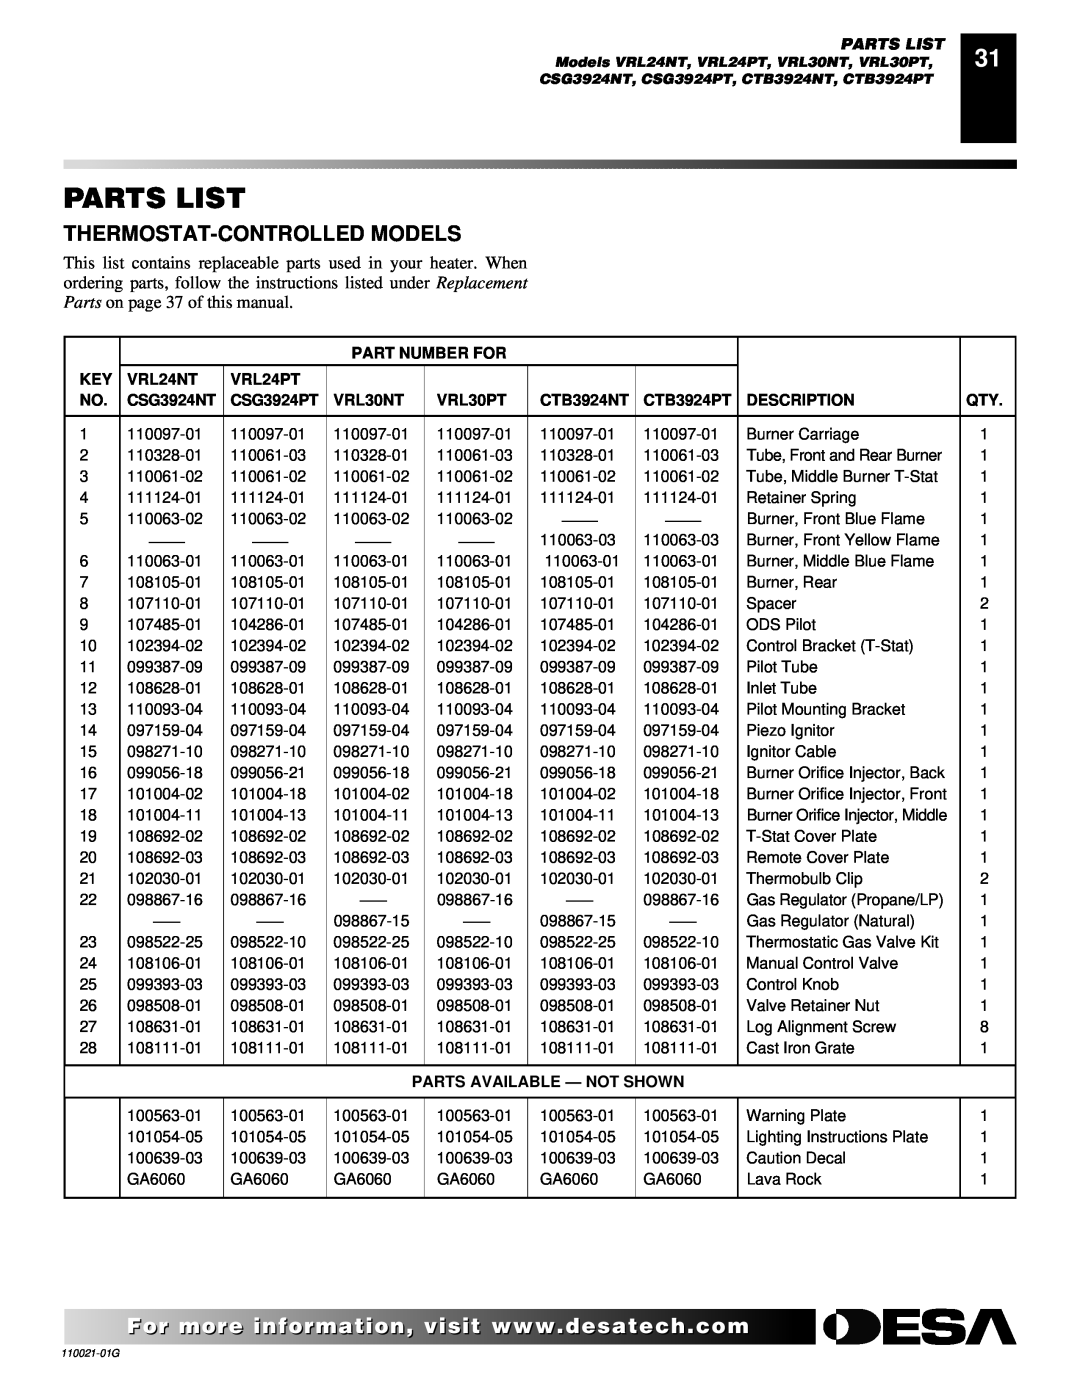 Desa CSG3930NR Parts List, Thermostat-Controlledmodels, Part Number For, VRL24NT, VRL24PT, CSG3924NT, CSG3924PT, VRL30NT 